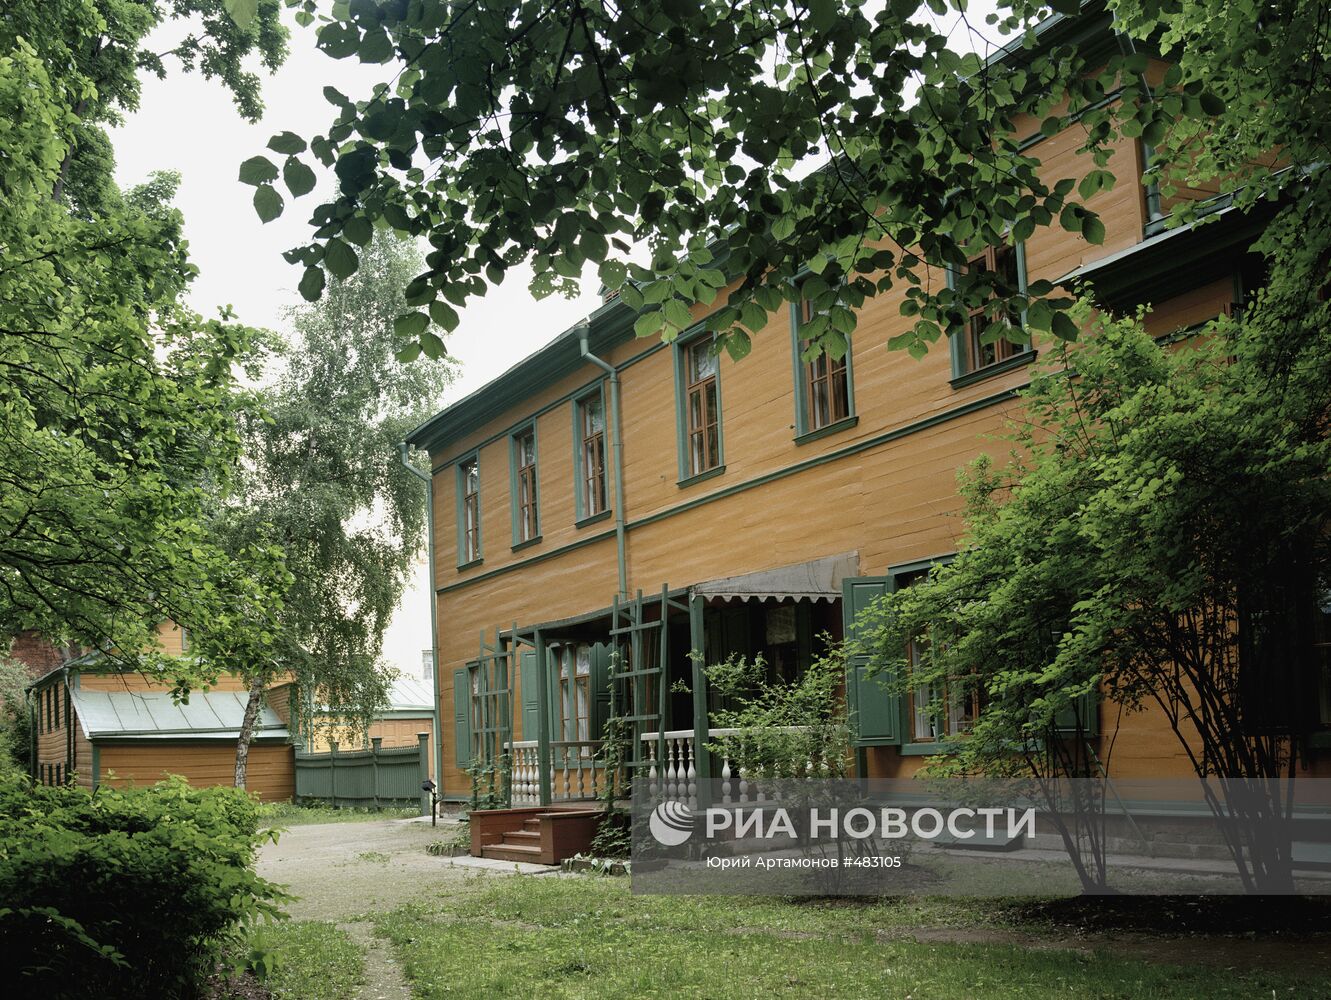 Дом Льва Николаевича Толстого в Хамовниках в Москве